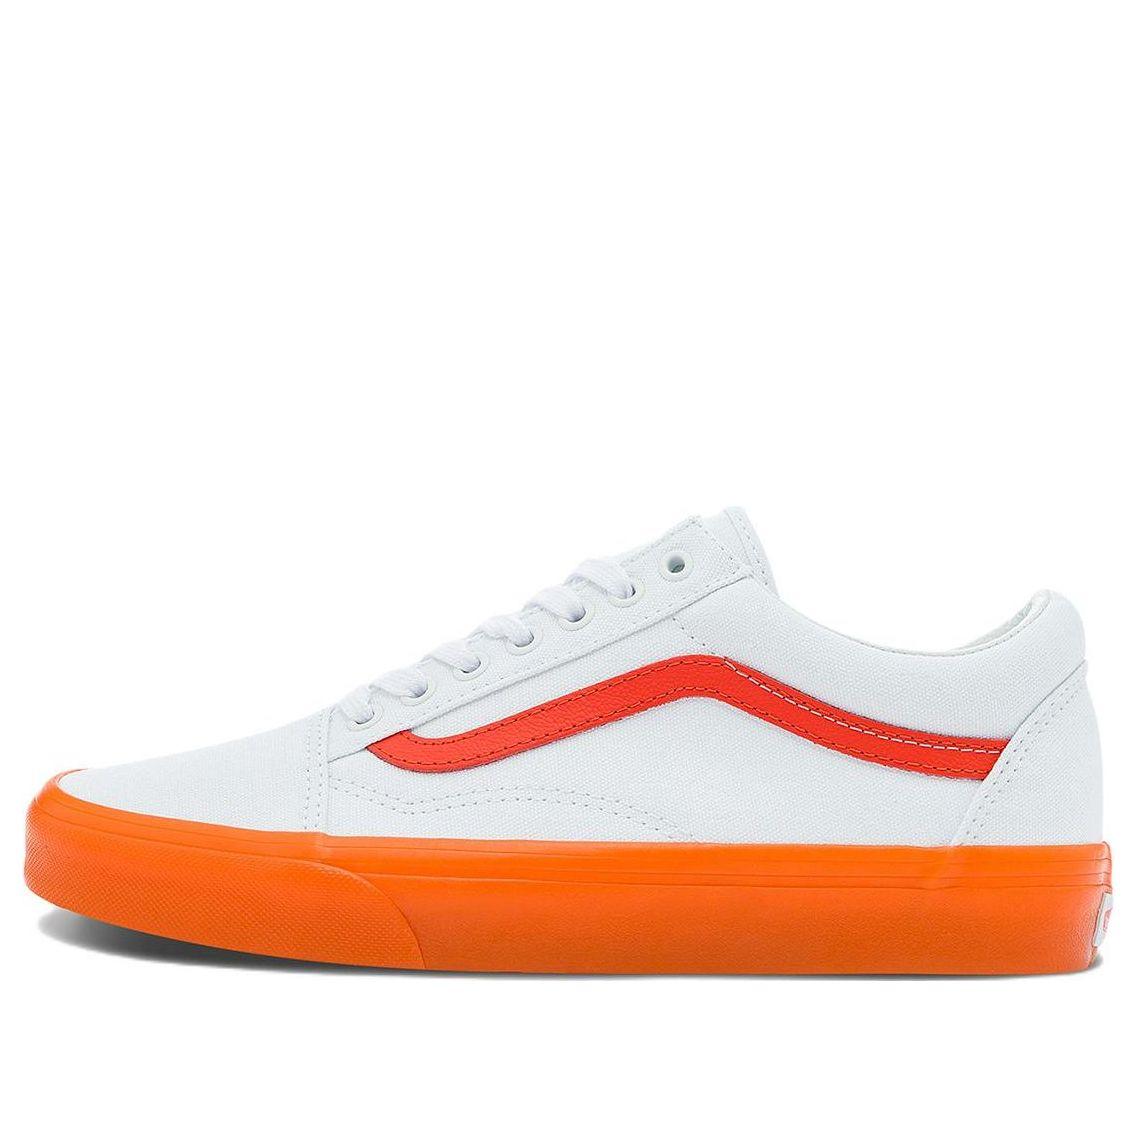 Vans Old Skool Casual Low Top Skate Shoes Small Orange Side Stripe | Lyst